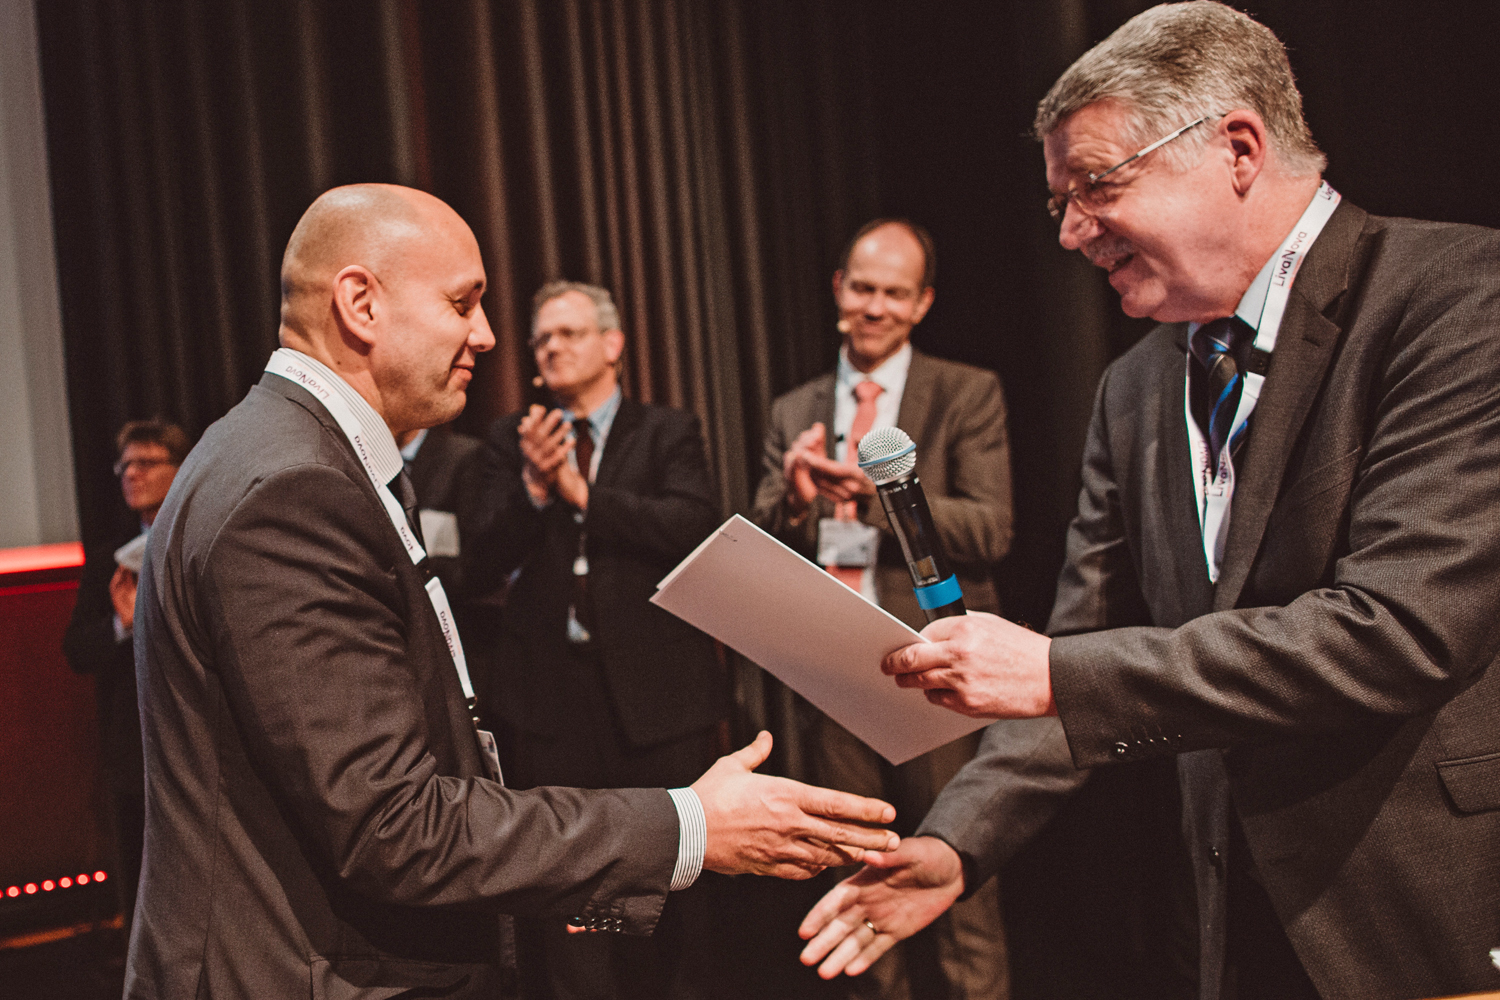 DGTHG President Dr. Wolfgang Harringer (right) presents Professor Andreas Oberbach from Fraunhofer IZI (left) with the Hans G. Borst Award